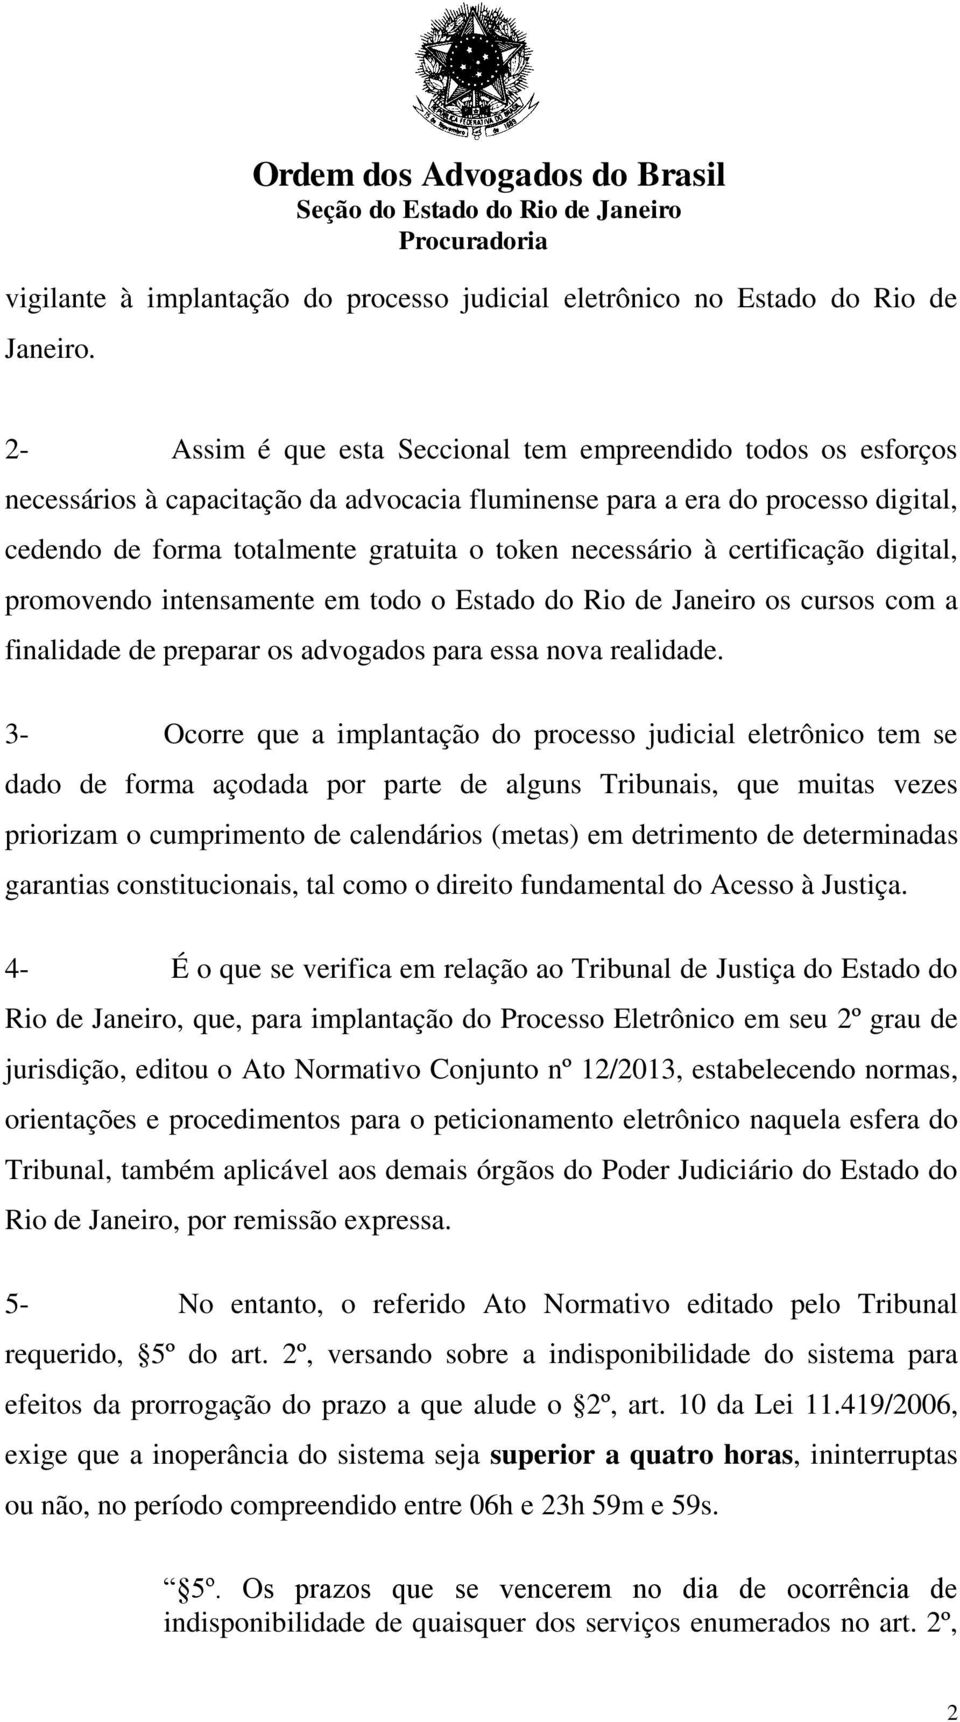 necessário à certificação digital, promovendo intensamente em todo o Estado do Rio de Janeiro os cursos com a finalidade de preparar os advogados para essa nova realidade.